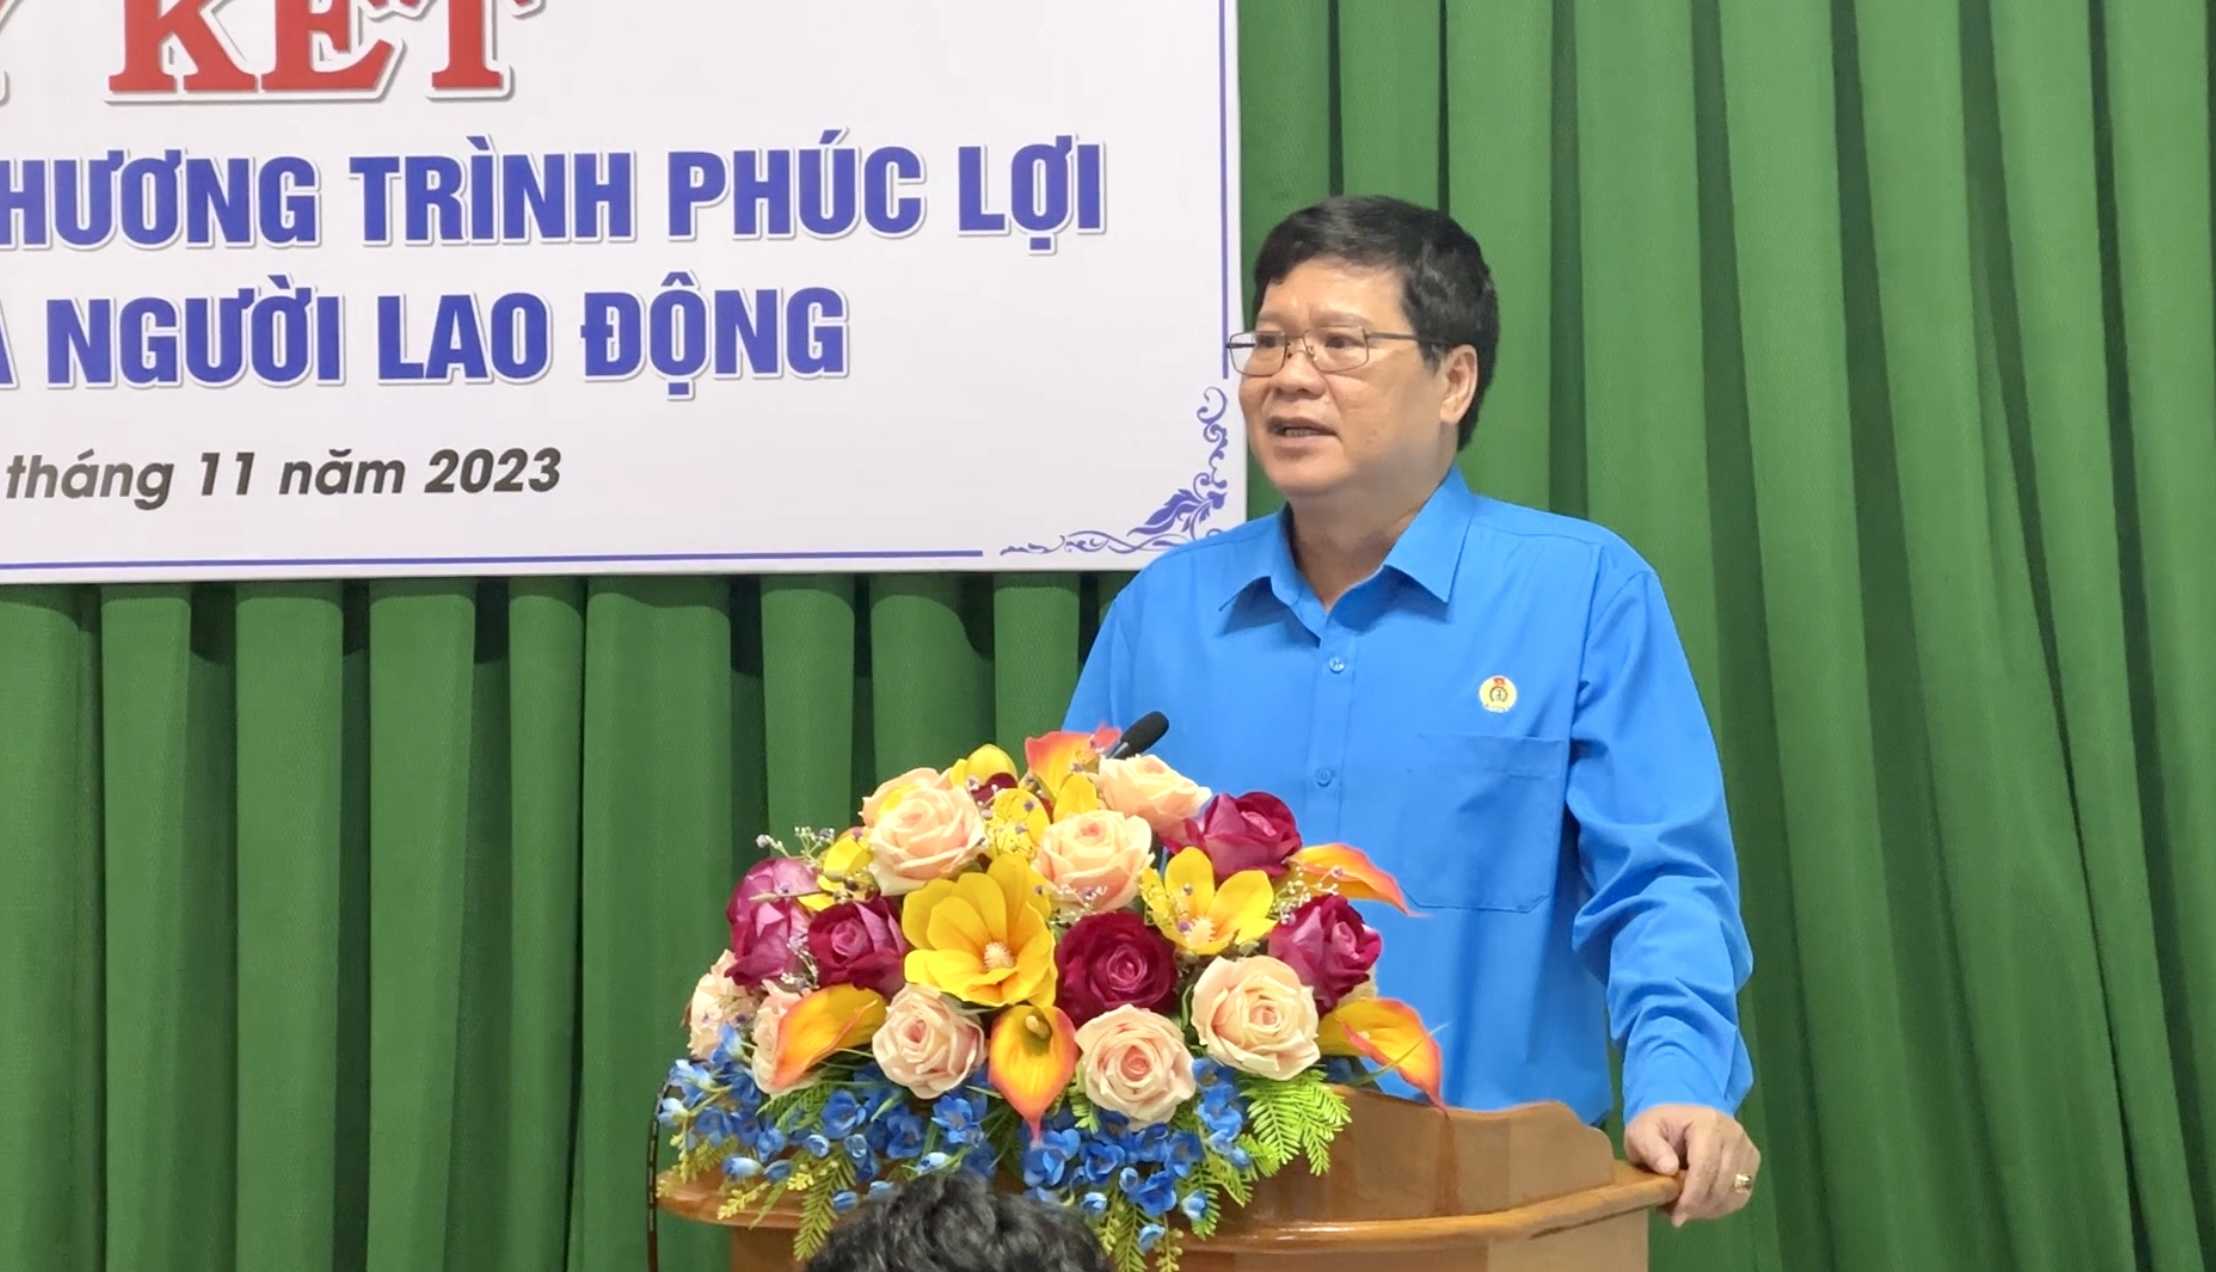 Ông Đỗ Hữu Quy, Chủ tịch LĐLĐ tỉnh Bình Thuận phát biểu cảm ơn công ty đã hợp tác. Ảnh: Duy Tuấn